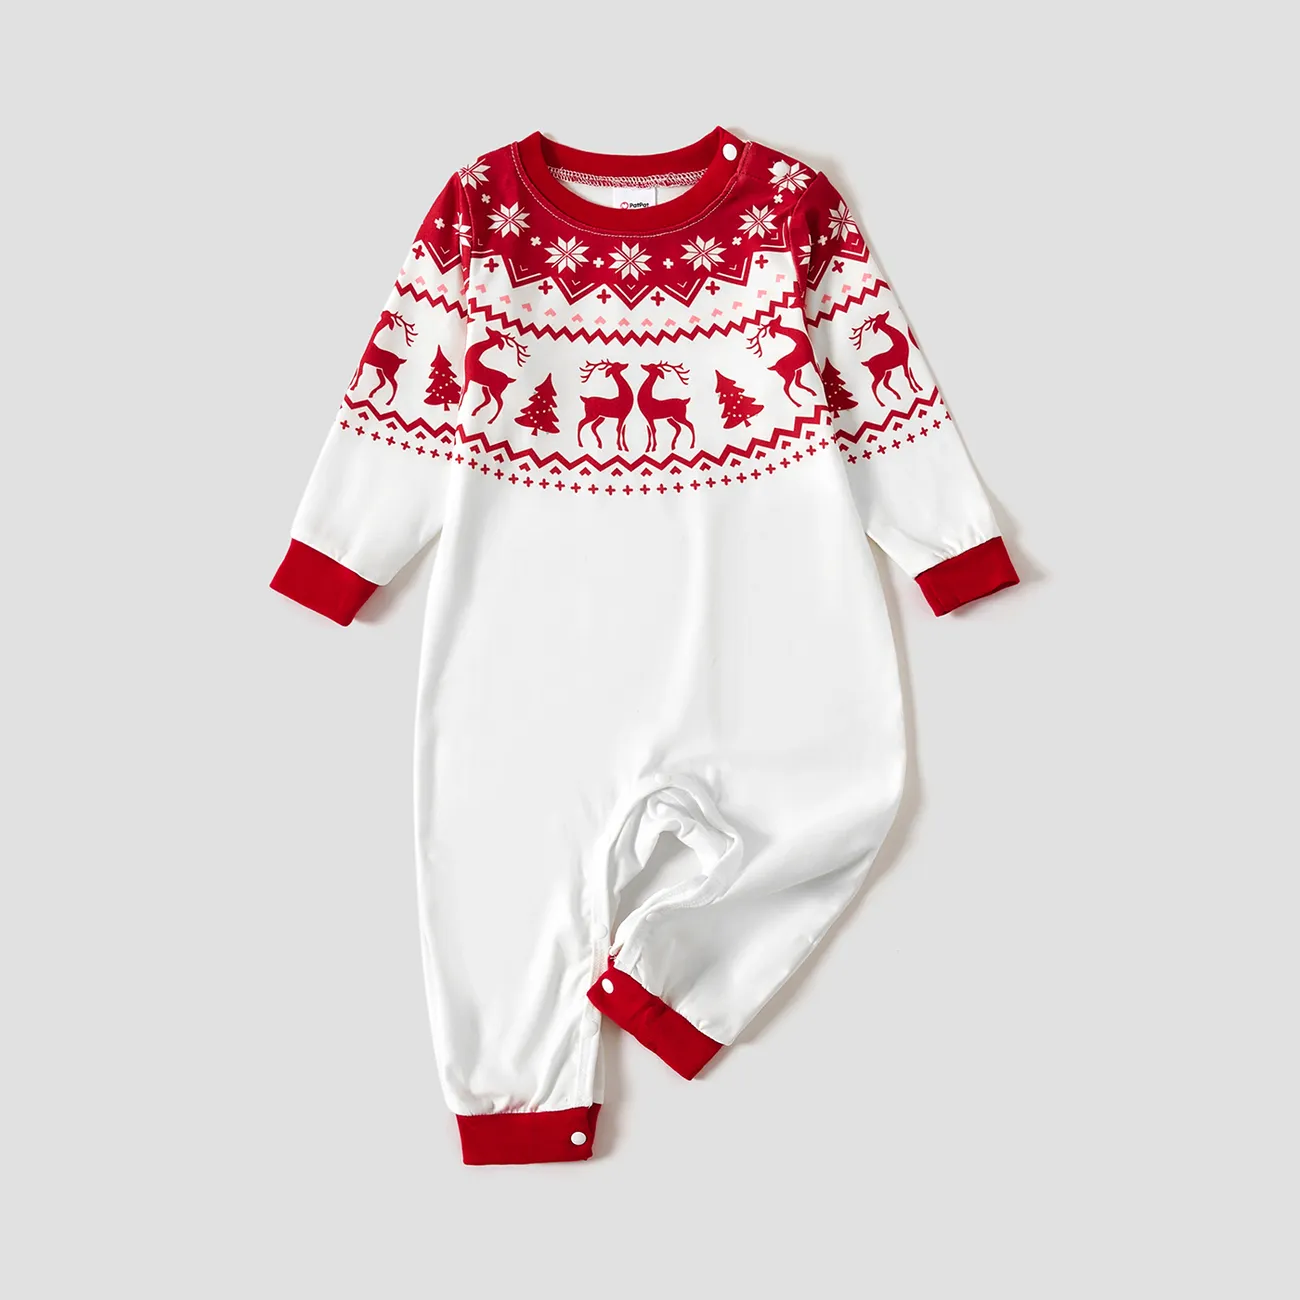 Christmas Reindeer and Snowflake Print Family Matching Pajamas Sets (Flame Resistant)  big image 1